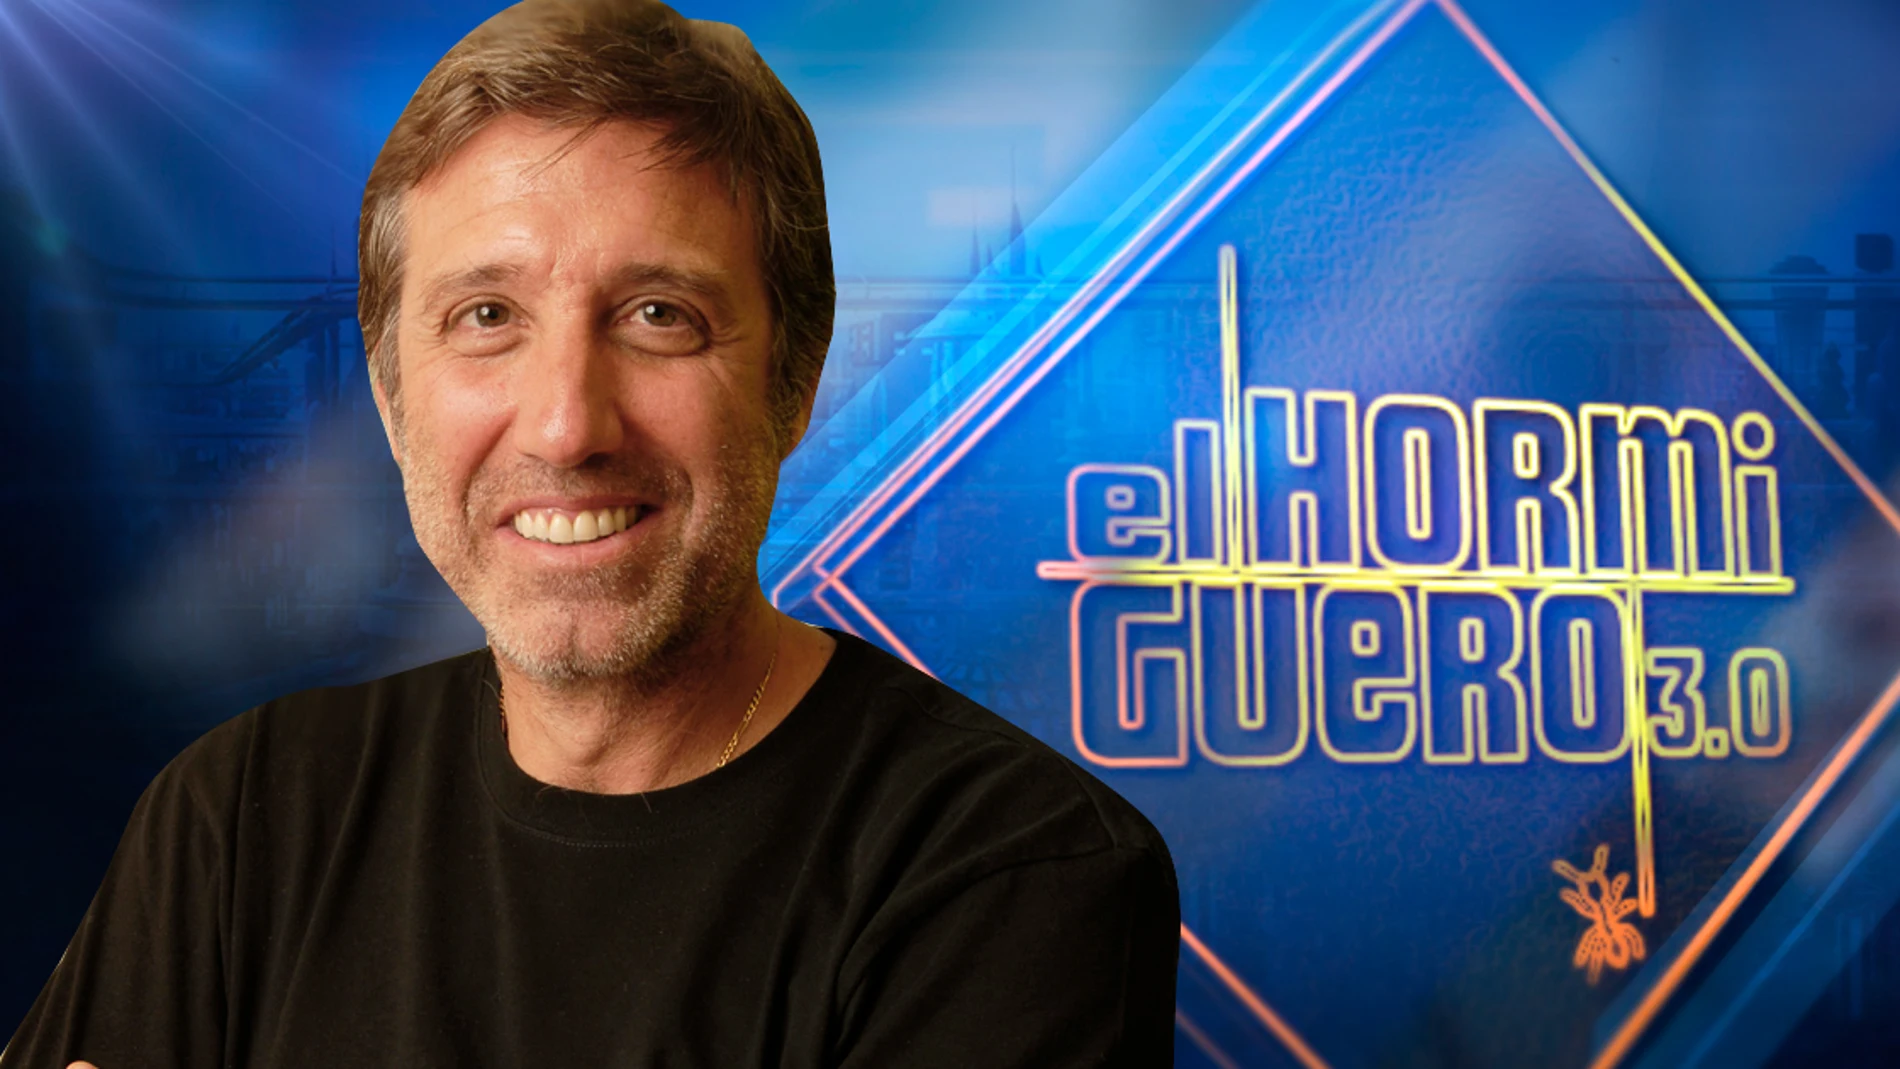 Emilio Aragón, director y creados de 'Pulsaciones' nos presentará la nueva serie de Antena 3 en 'El Hormiguero 3.0'